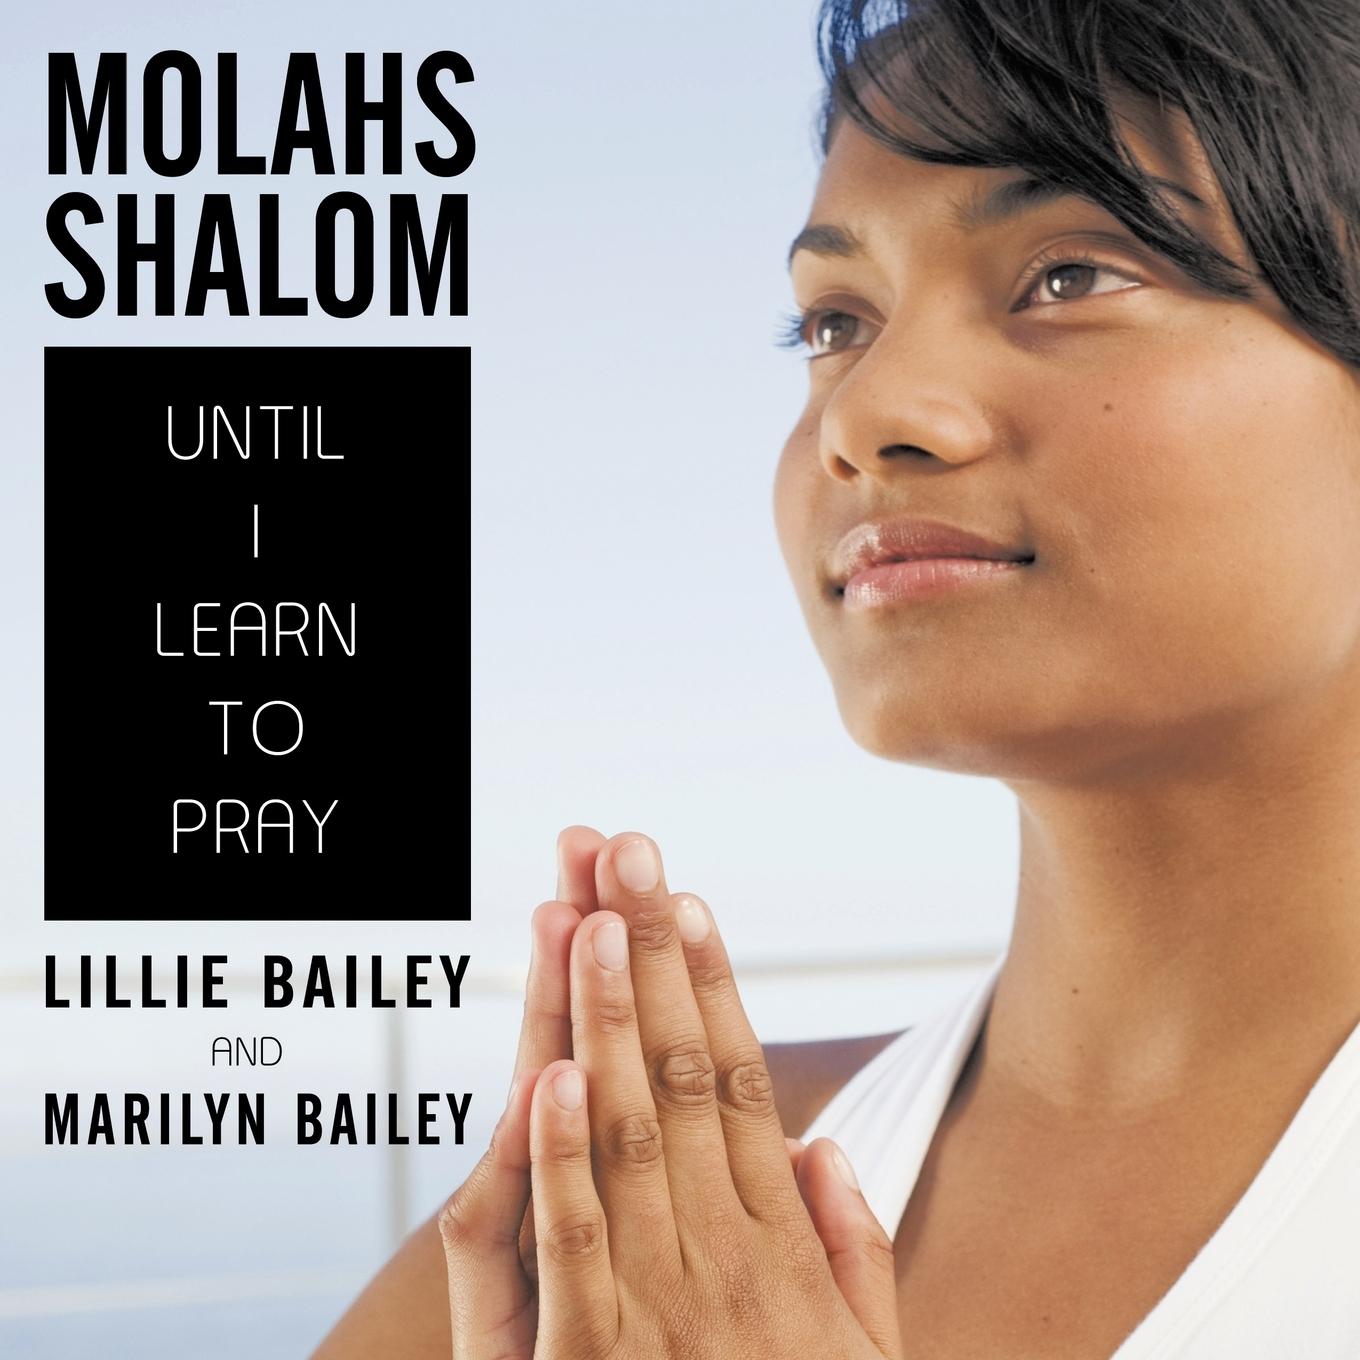 Molahs Shalom - Bailey, Lillie Bailey, Marilyn